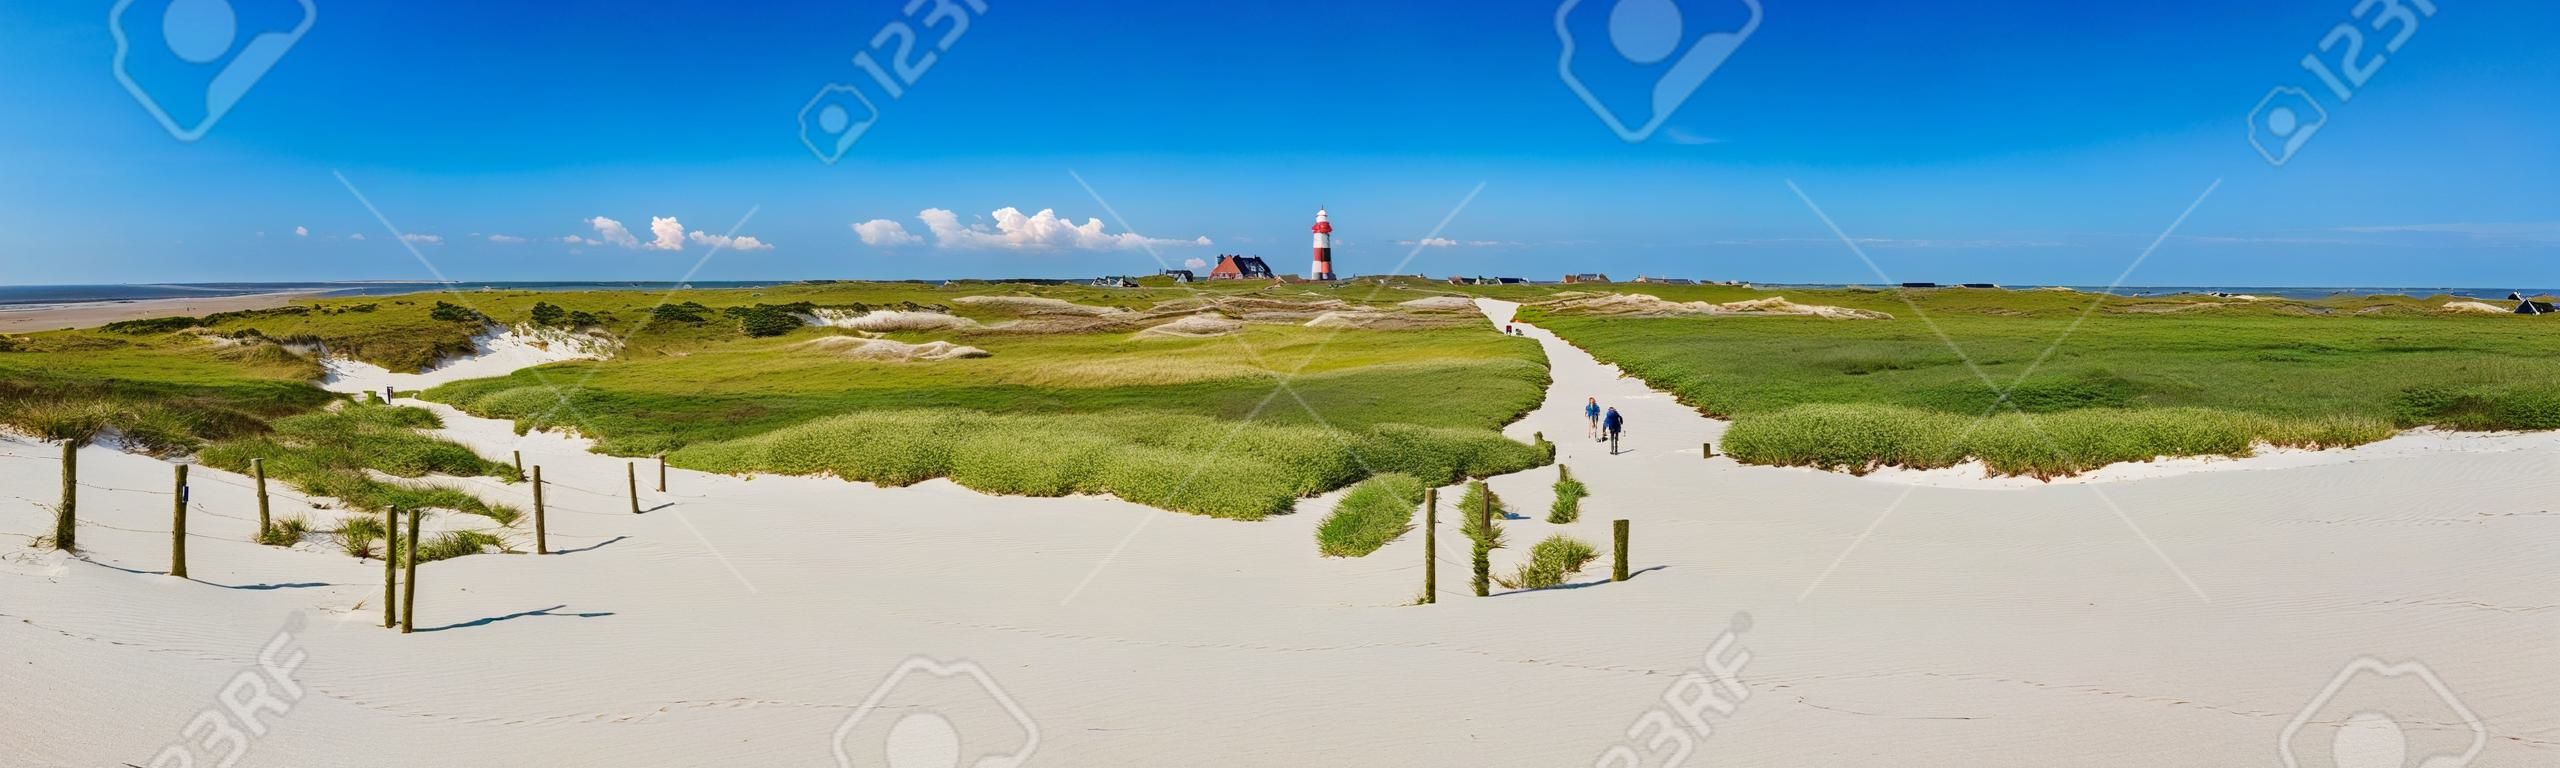 Schöne Dünenlandschaft mit traditionellen Leuchtturm auf der Insel Amrum in der Nordsee, Schleswig-Holstein, Deutschland